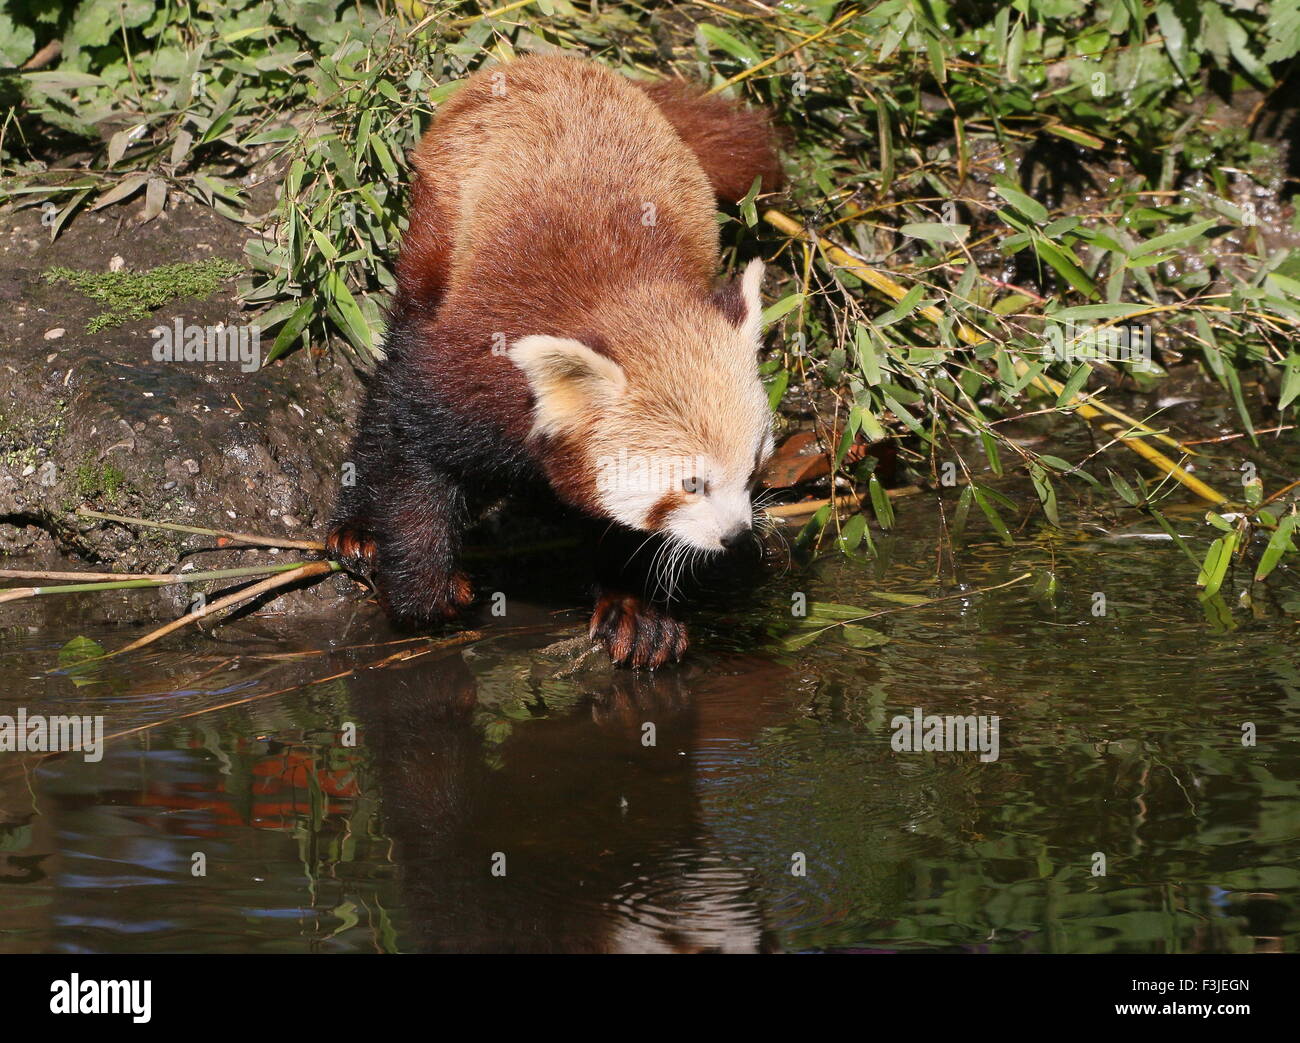 Asian Red Panda (Ailurus fulgens) at the water's edge Stock Photo